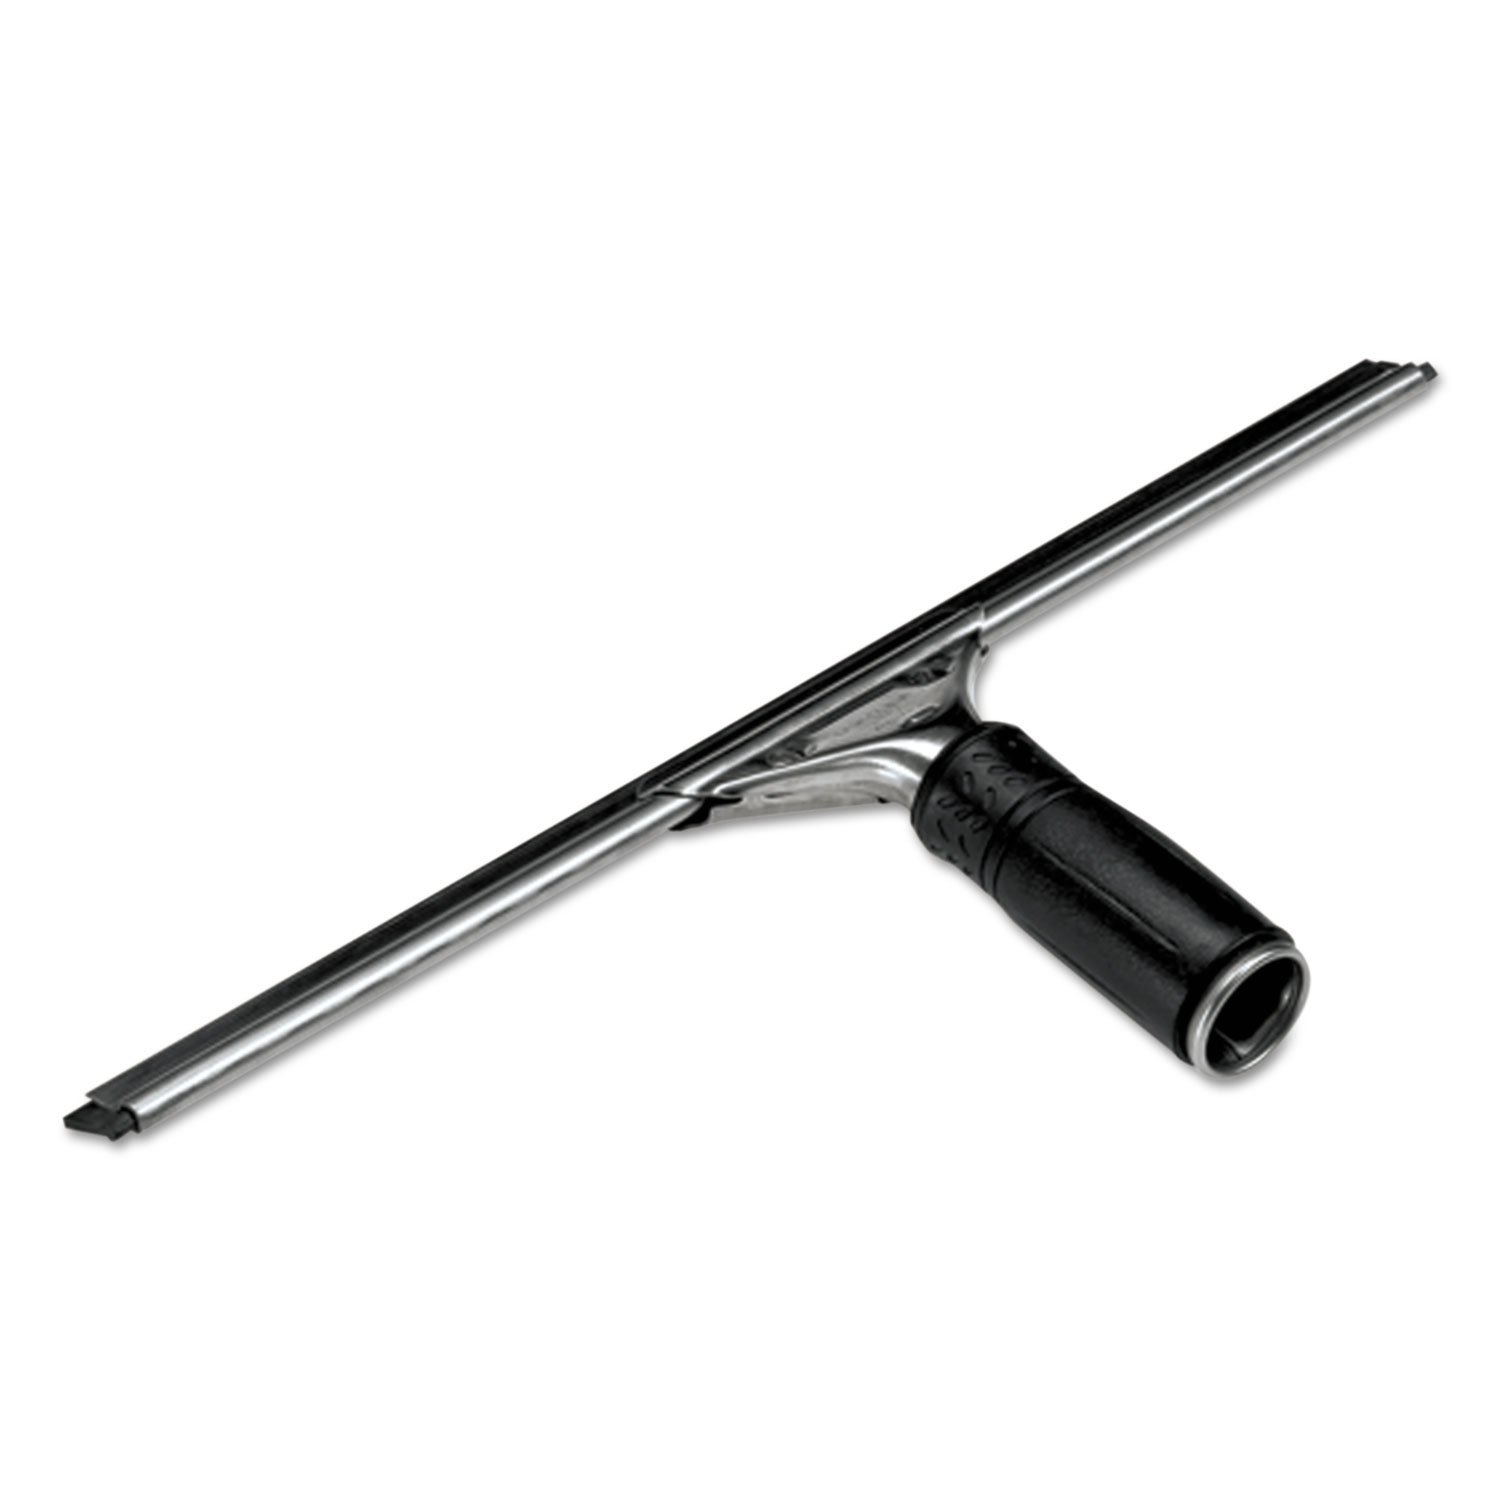  Unger PR450 Pro Stainless Steel Window Squeegee, 18 Wide Blade, Black Rubber (UNGPR45) 